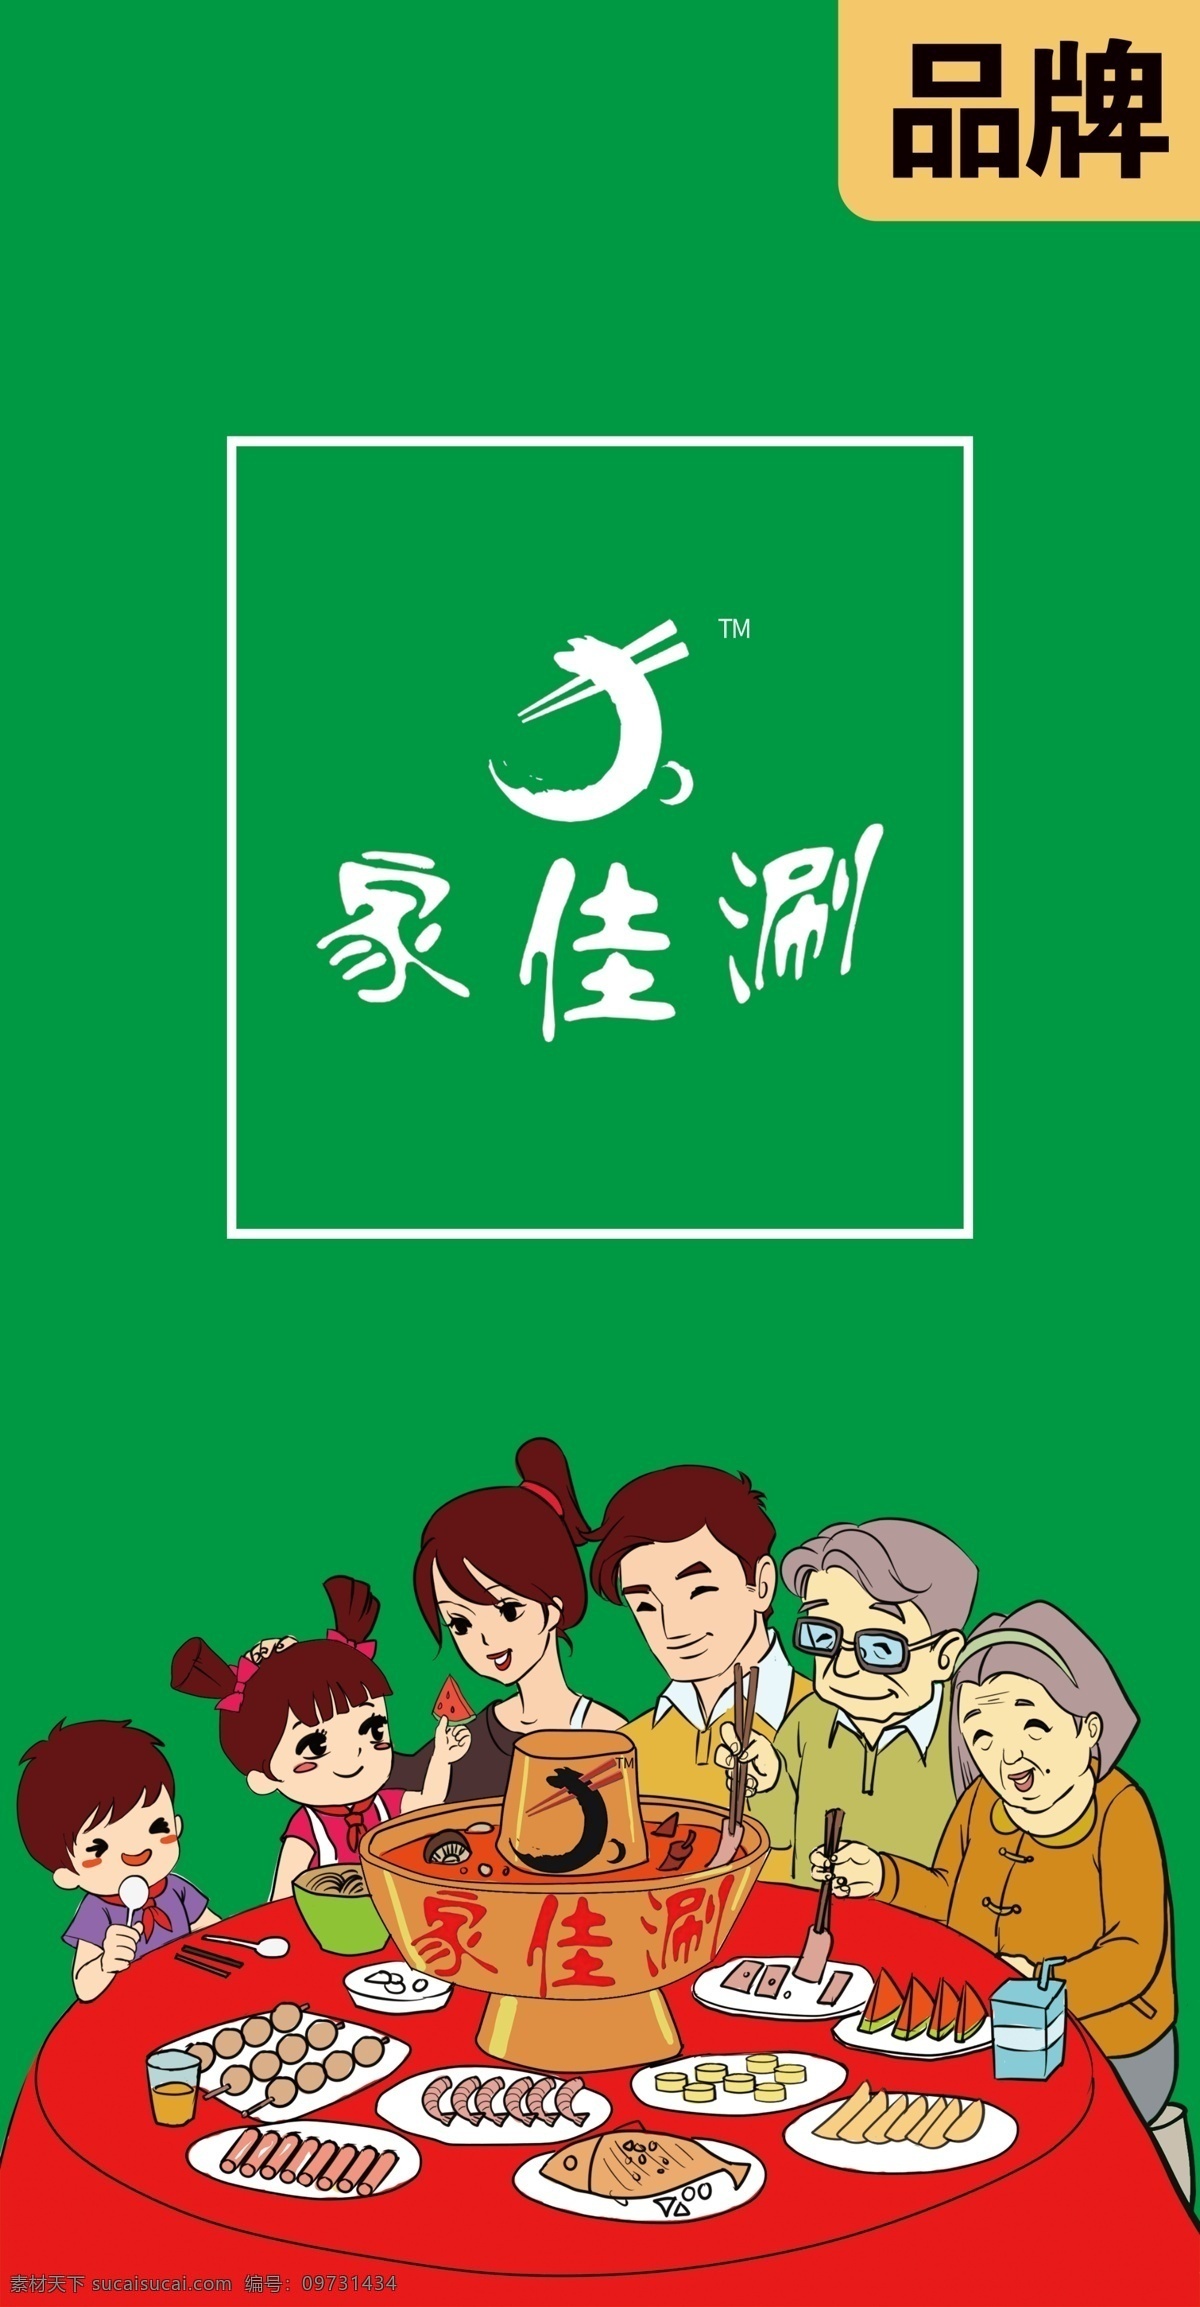 家 佳 涮 火锅 logo 家佳涮 火锅logo 广告 烧烤 宣传 标志 logo设计